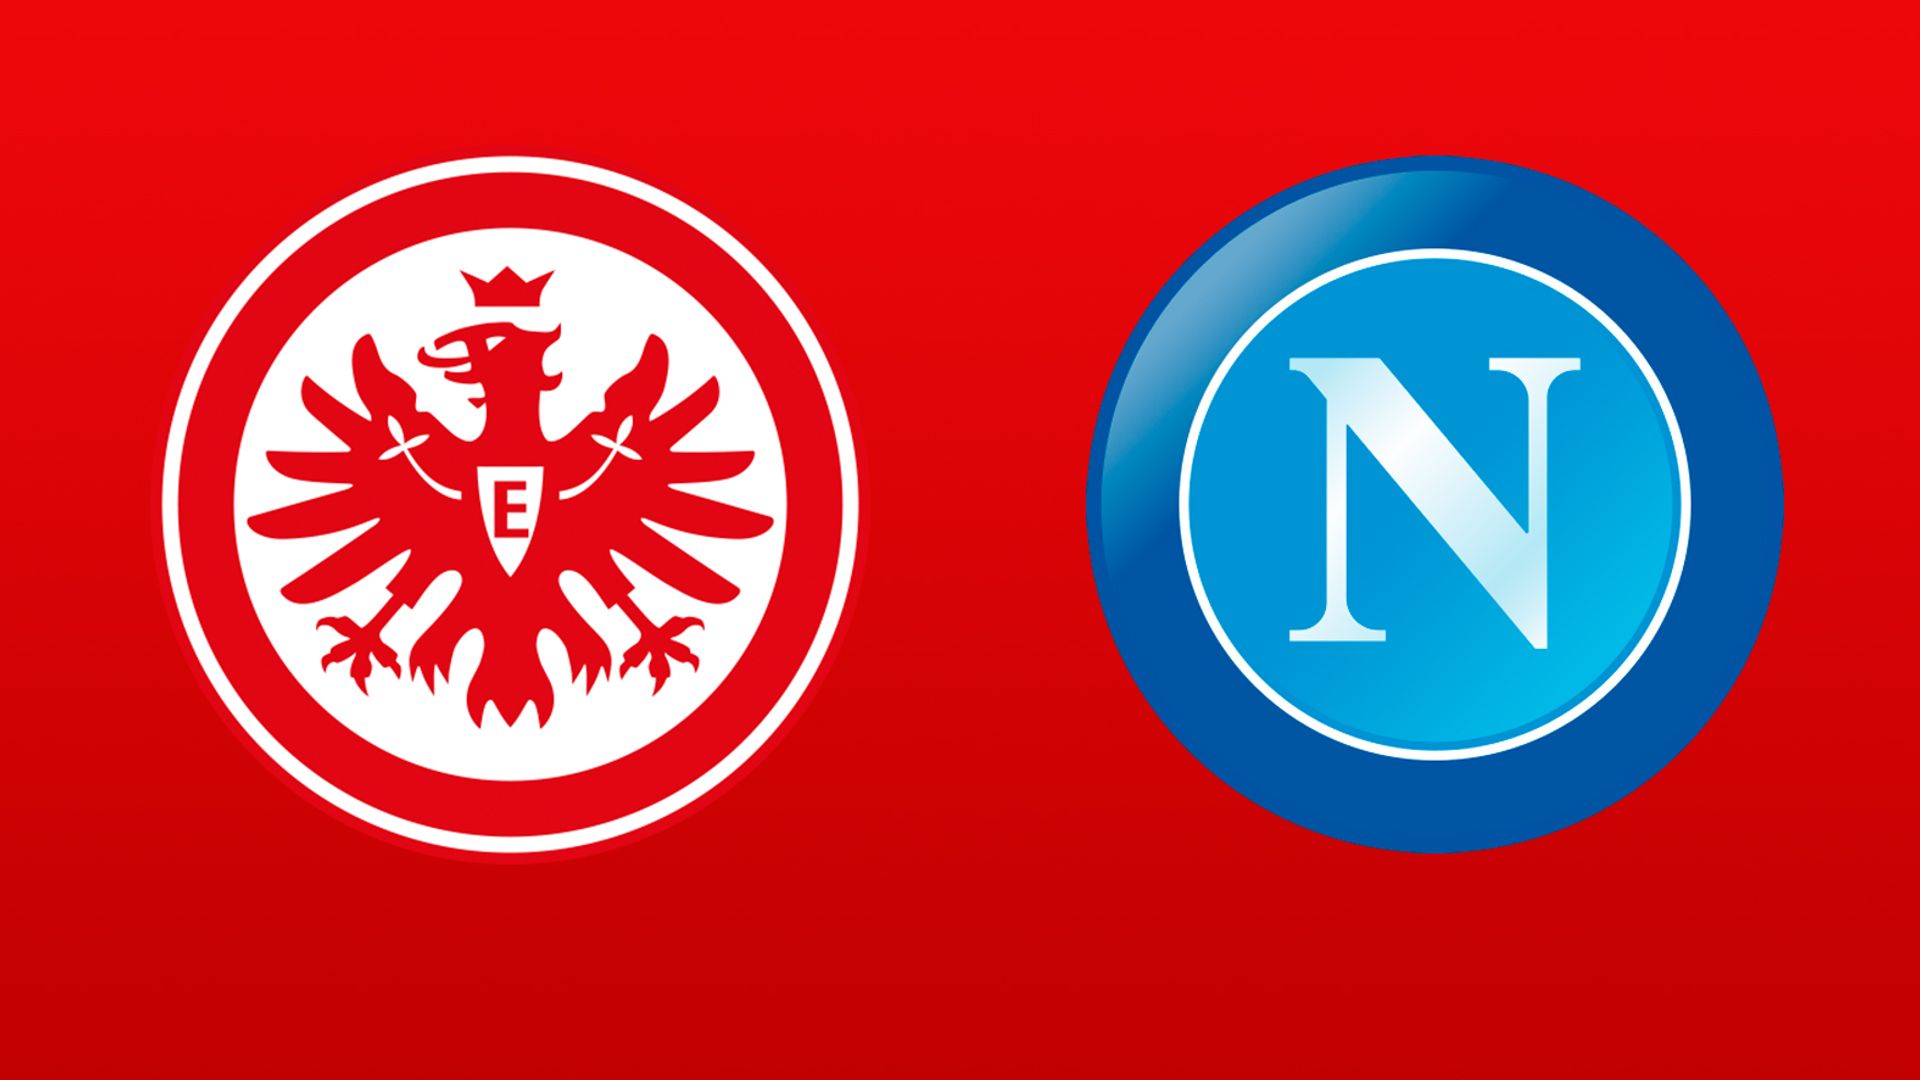 Eintracht Frankfurt 0-2 Napoli - latest score